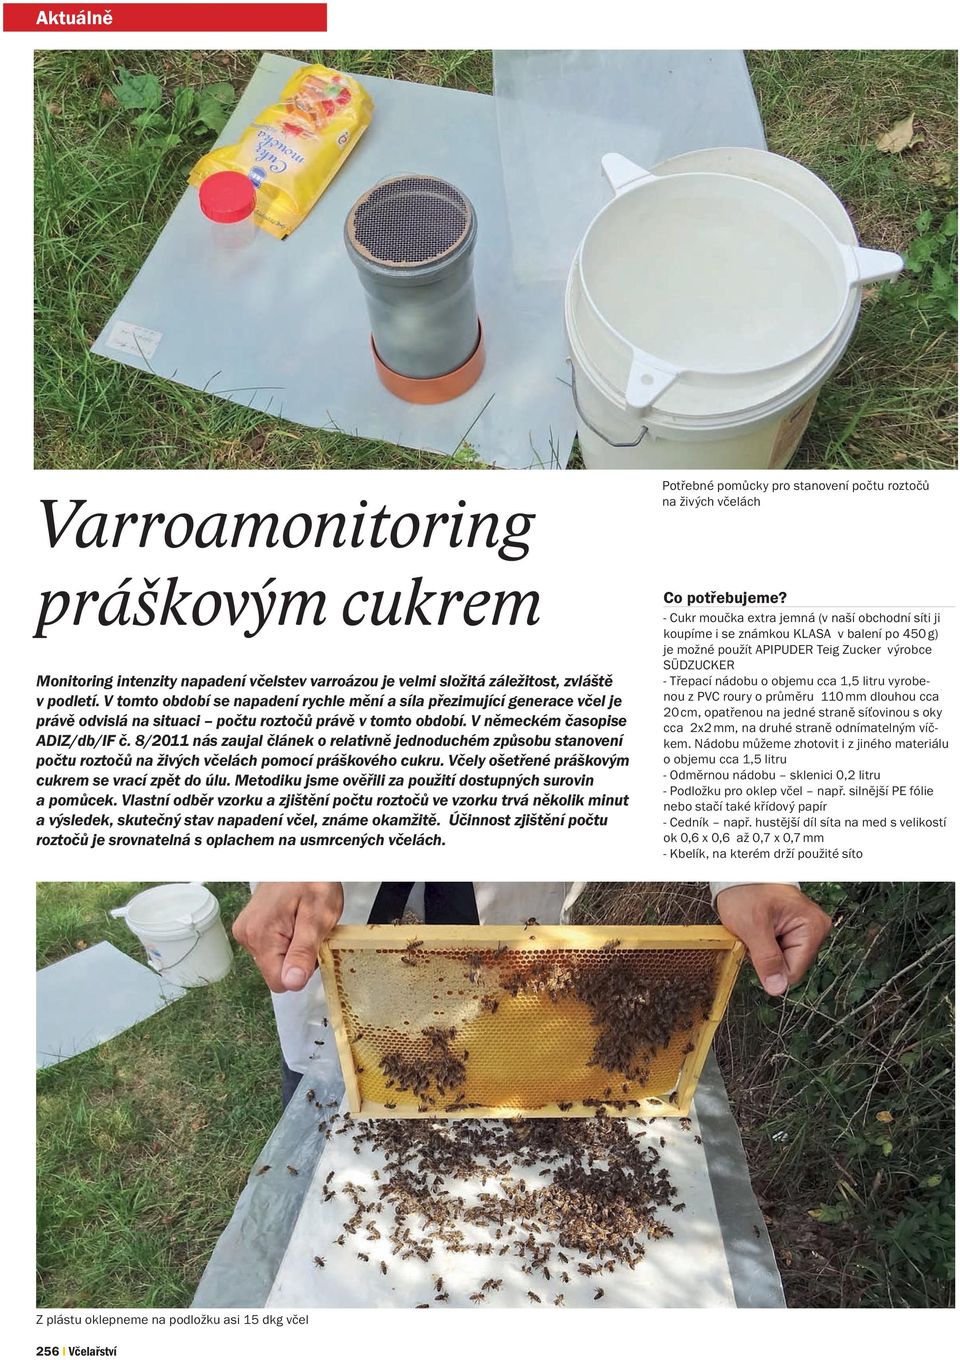 8/2011 nás zaujal článek o relativně jednoduchém způsobu stanovení počtu roztočů na živých včelách pomocí práškového cukru. Včely ošetřené práškovým cukrem se vrací zpět do úlu.